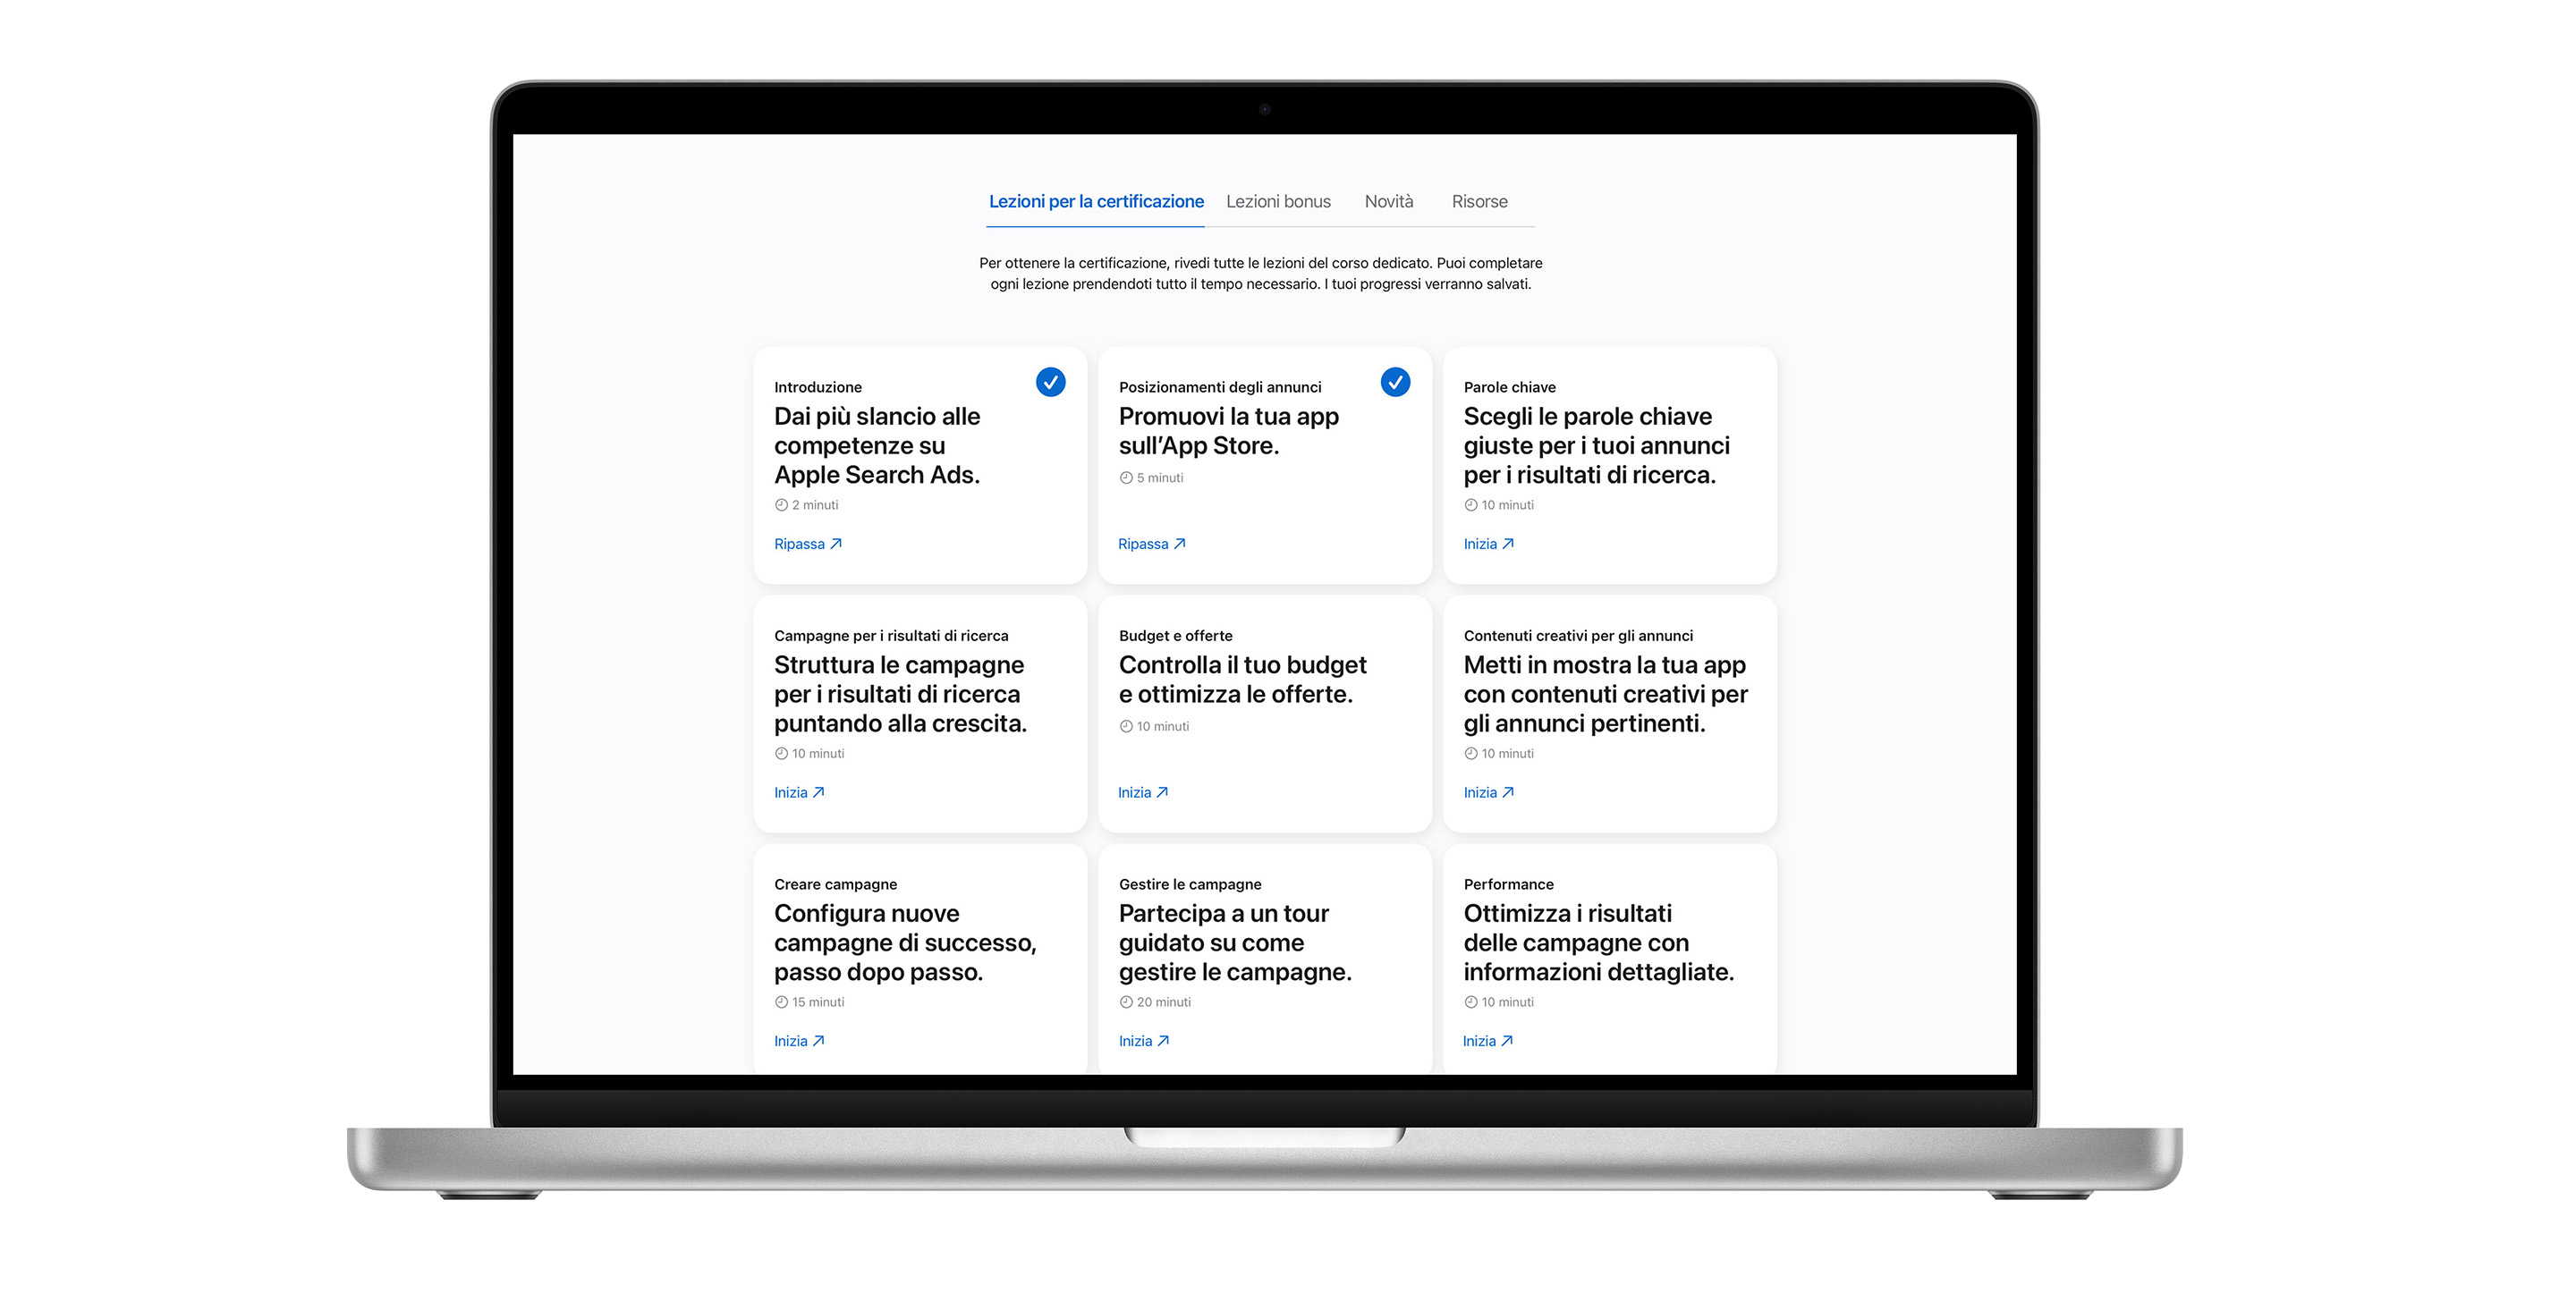 Pagina delle lezioni per la certificazione Apple Search Ads che mostra nove moduli di lezione. Le prime due lezioni hanno un segno di spunta blu, a indicare che sono state completate.